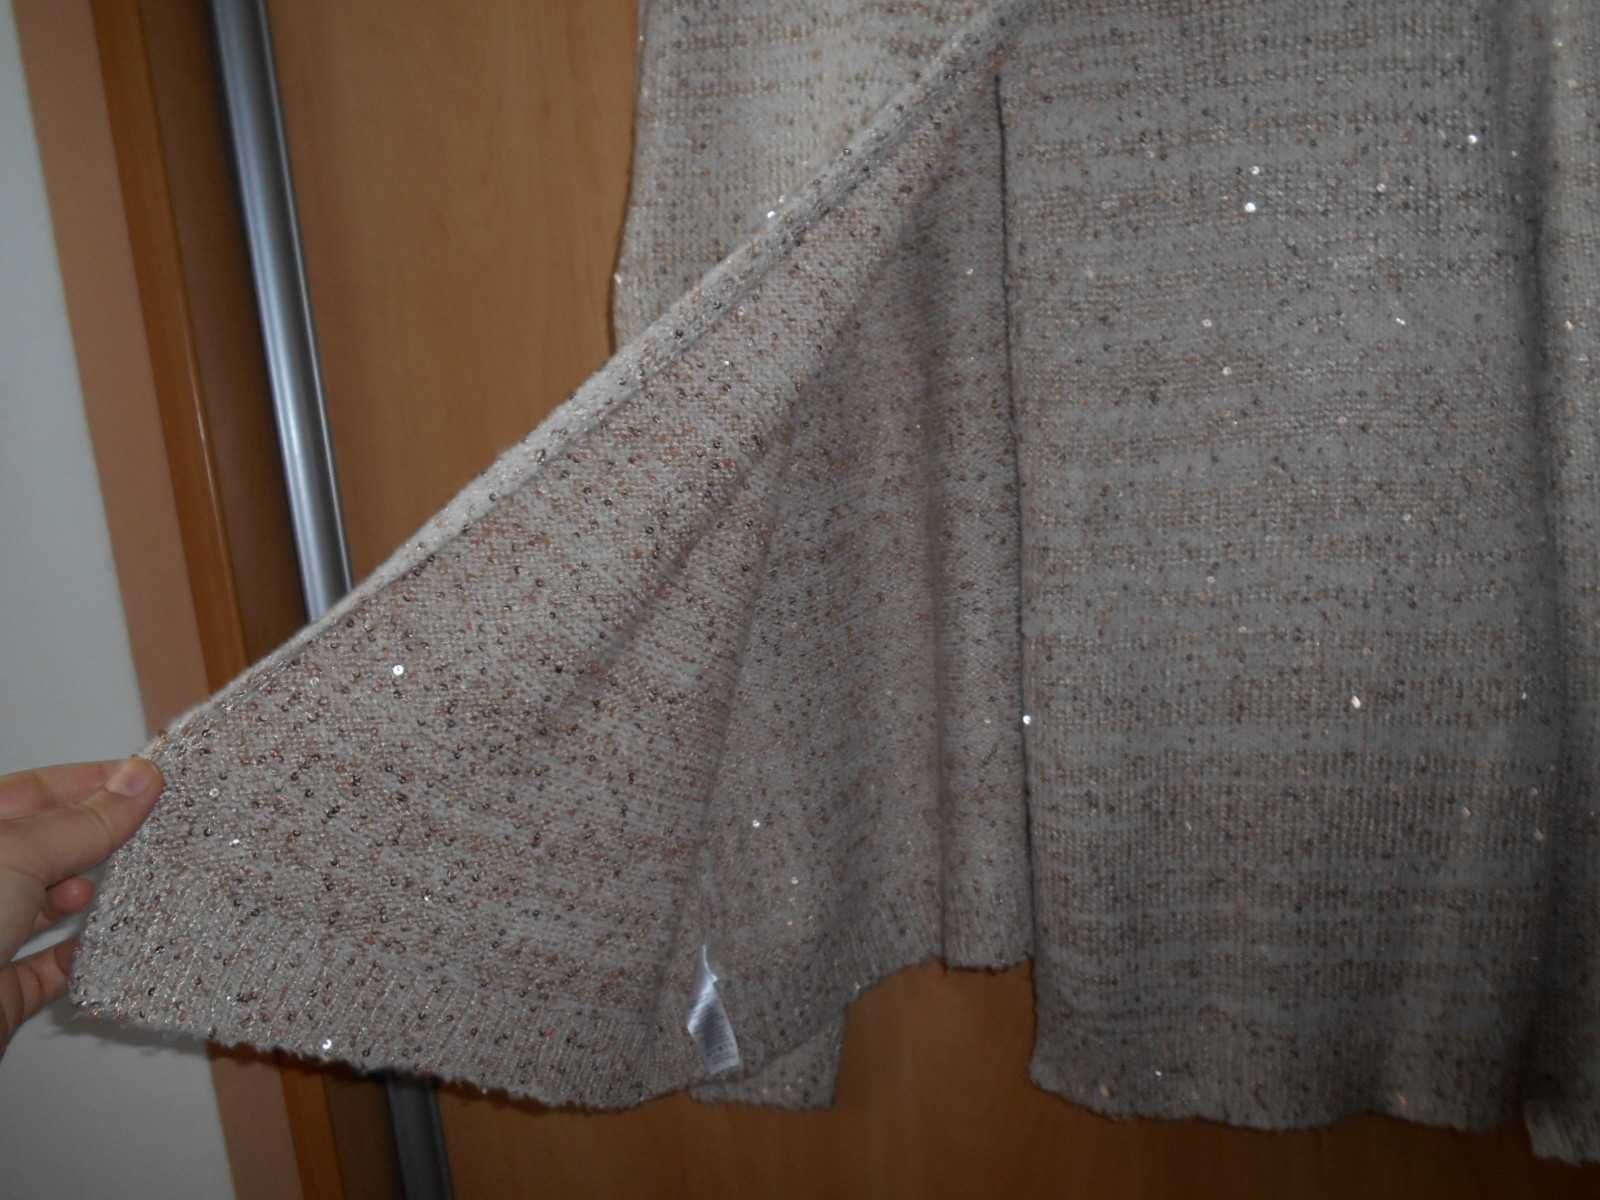 свитер с пайетками 50-52 размер на спине распорка